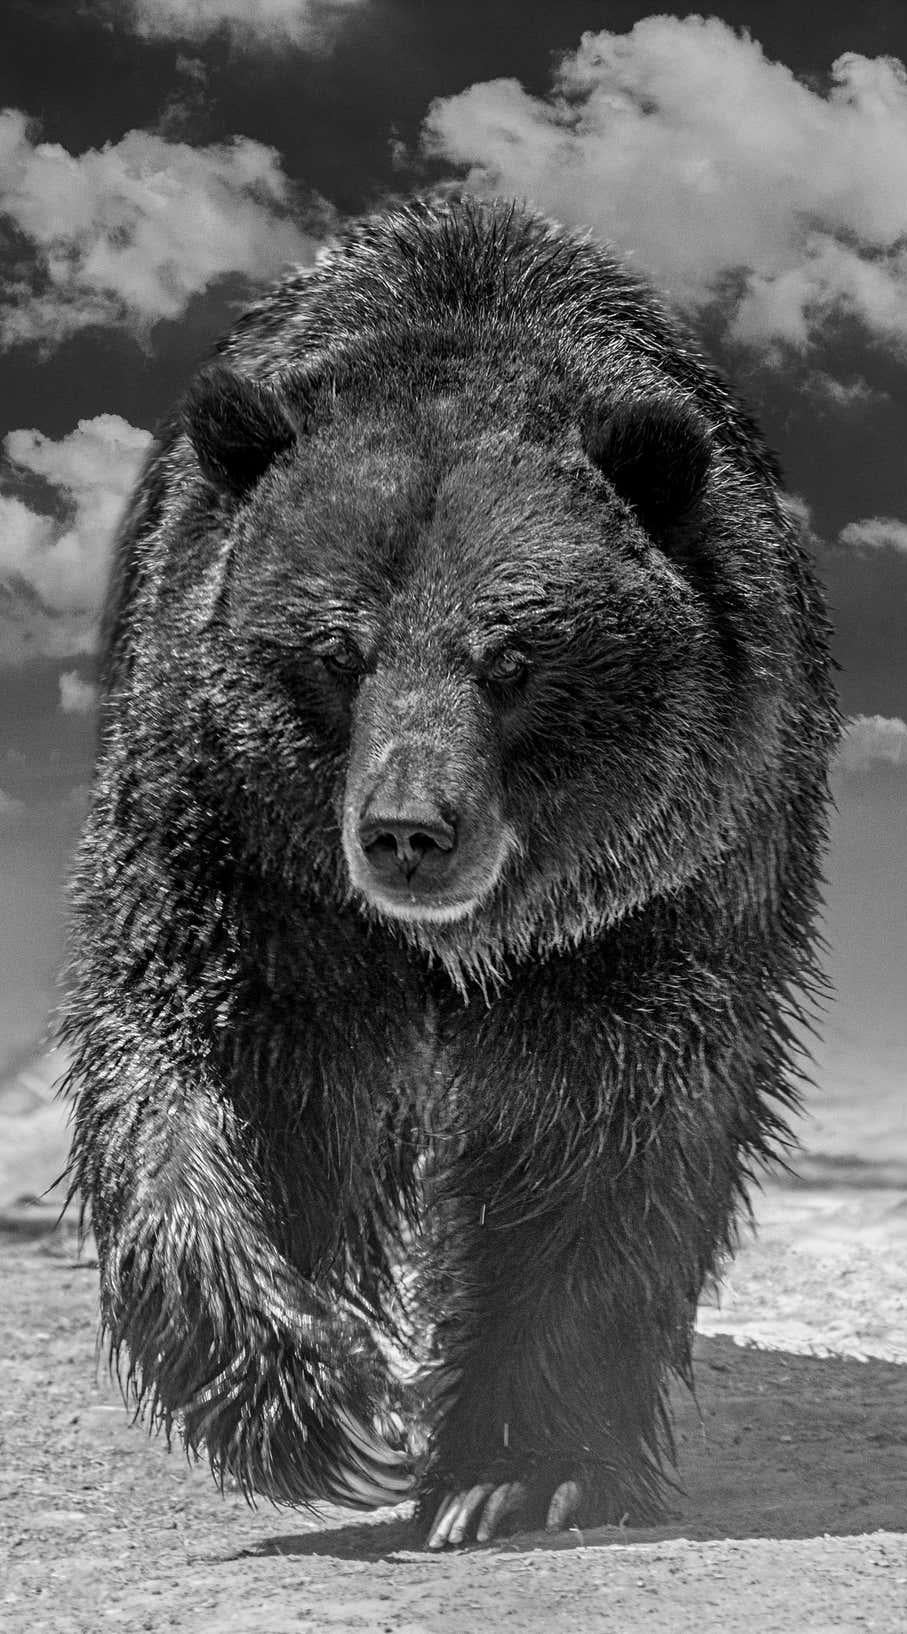 Shane Russeck Black and White Photograph – Grizzly Shores 50x90, Schwarz-Weiß-Fotografie mit Grizzly-Bär, bildende Kunst